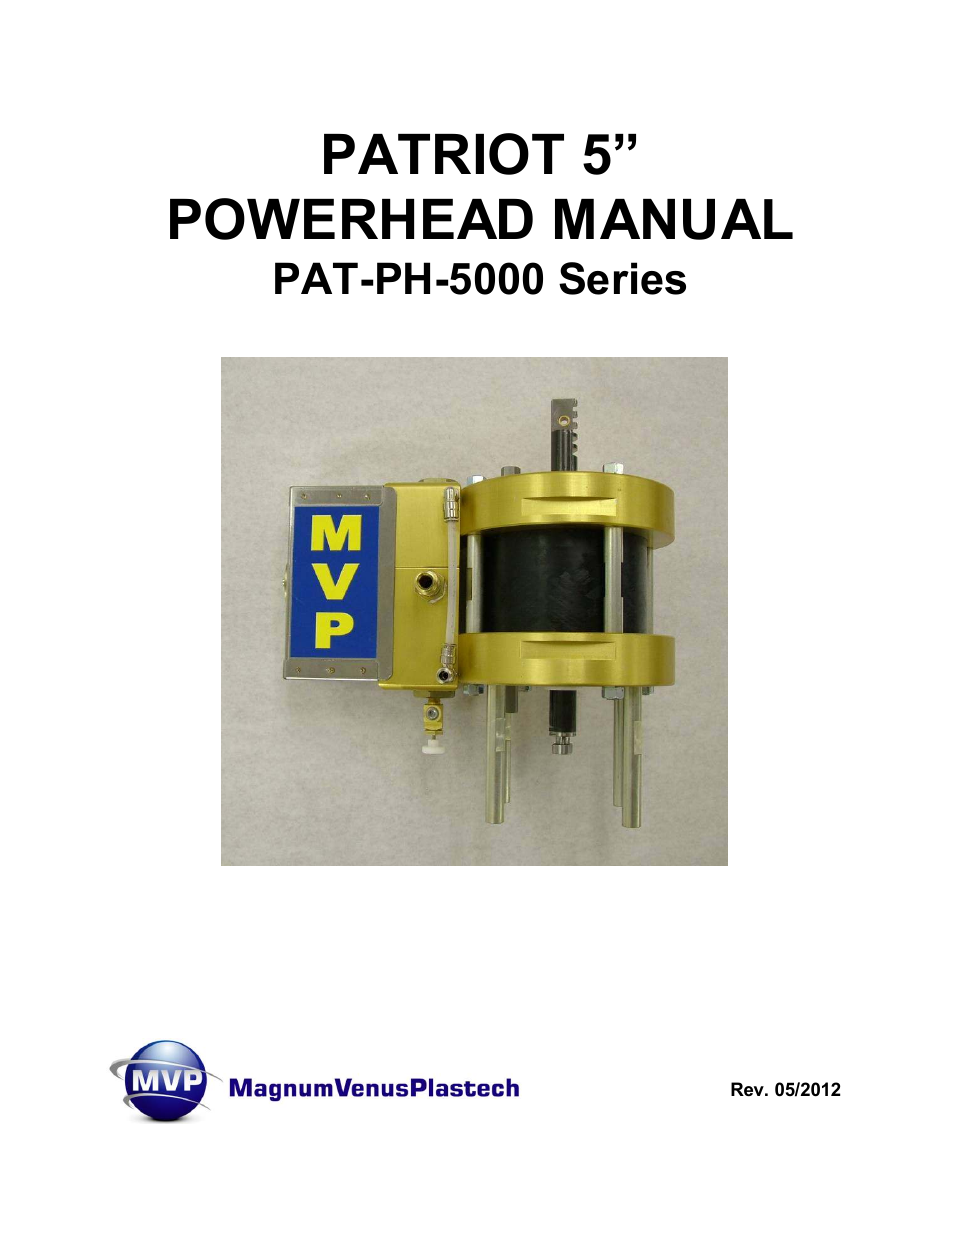 PATRIOT 5 PAT-PH-5000 Series (Page 1)